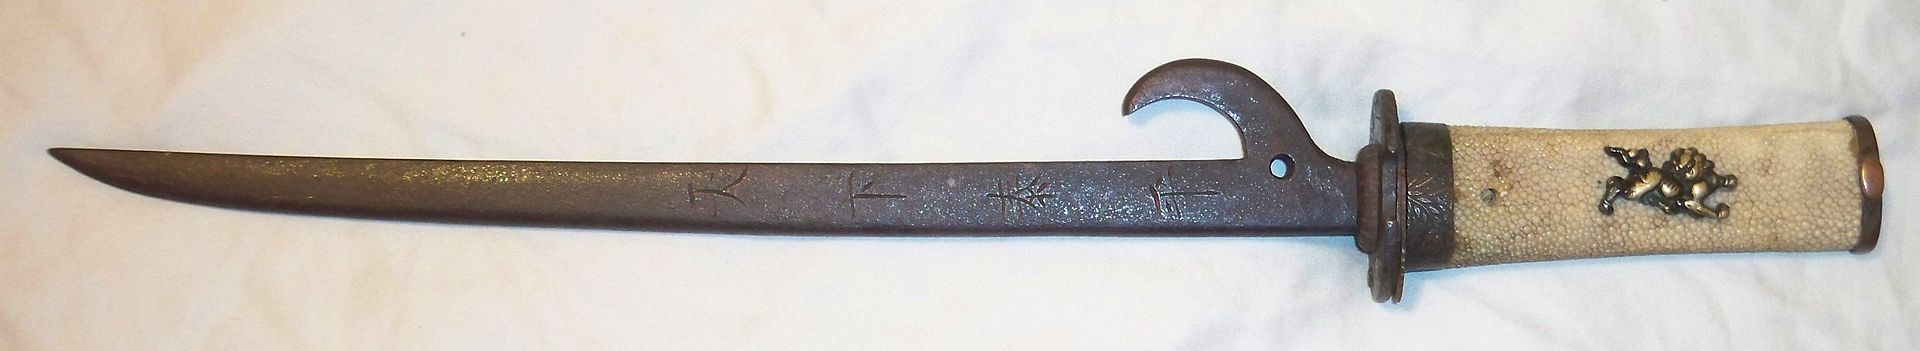 Pleins feux sur l'épée : les Kabutowari